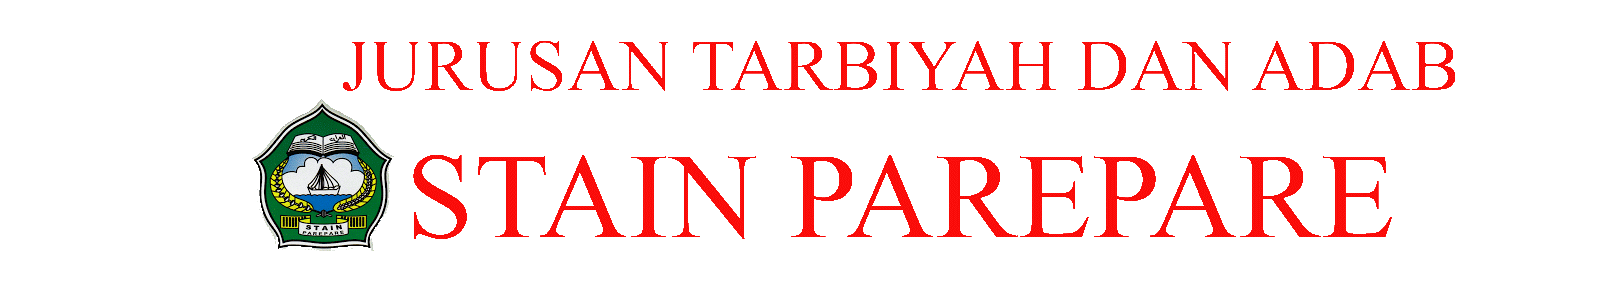 JURUSAN TARBIYAH STAIN PAREPARE